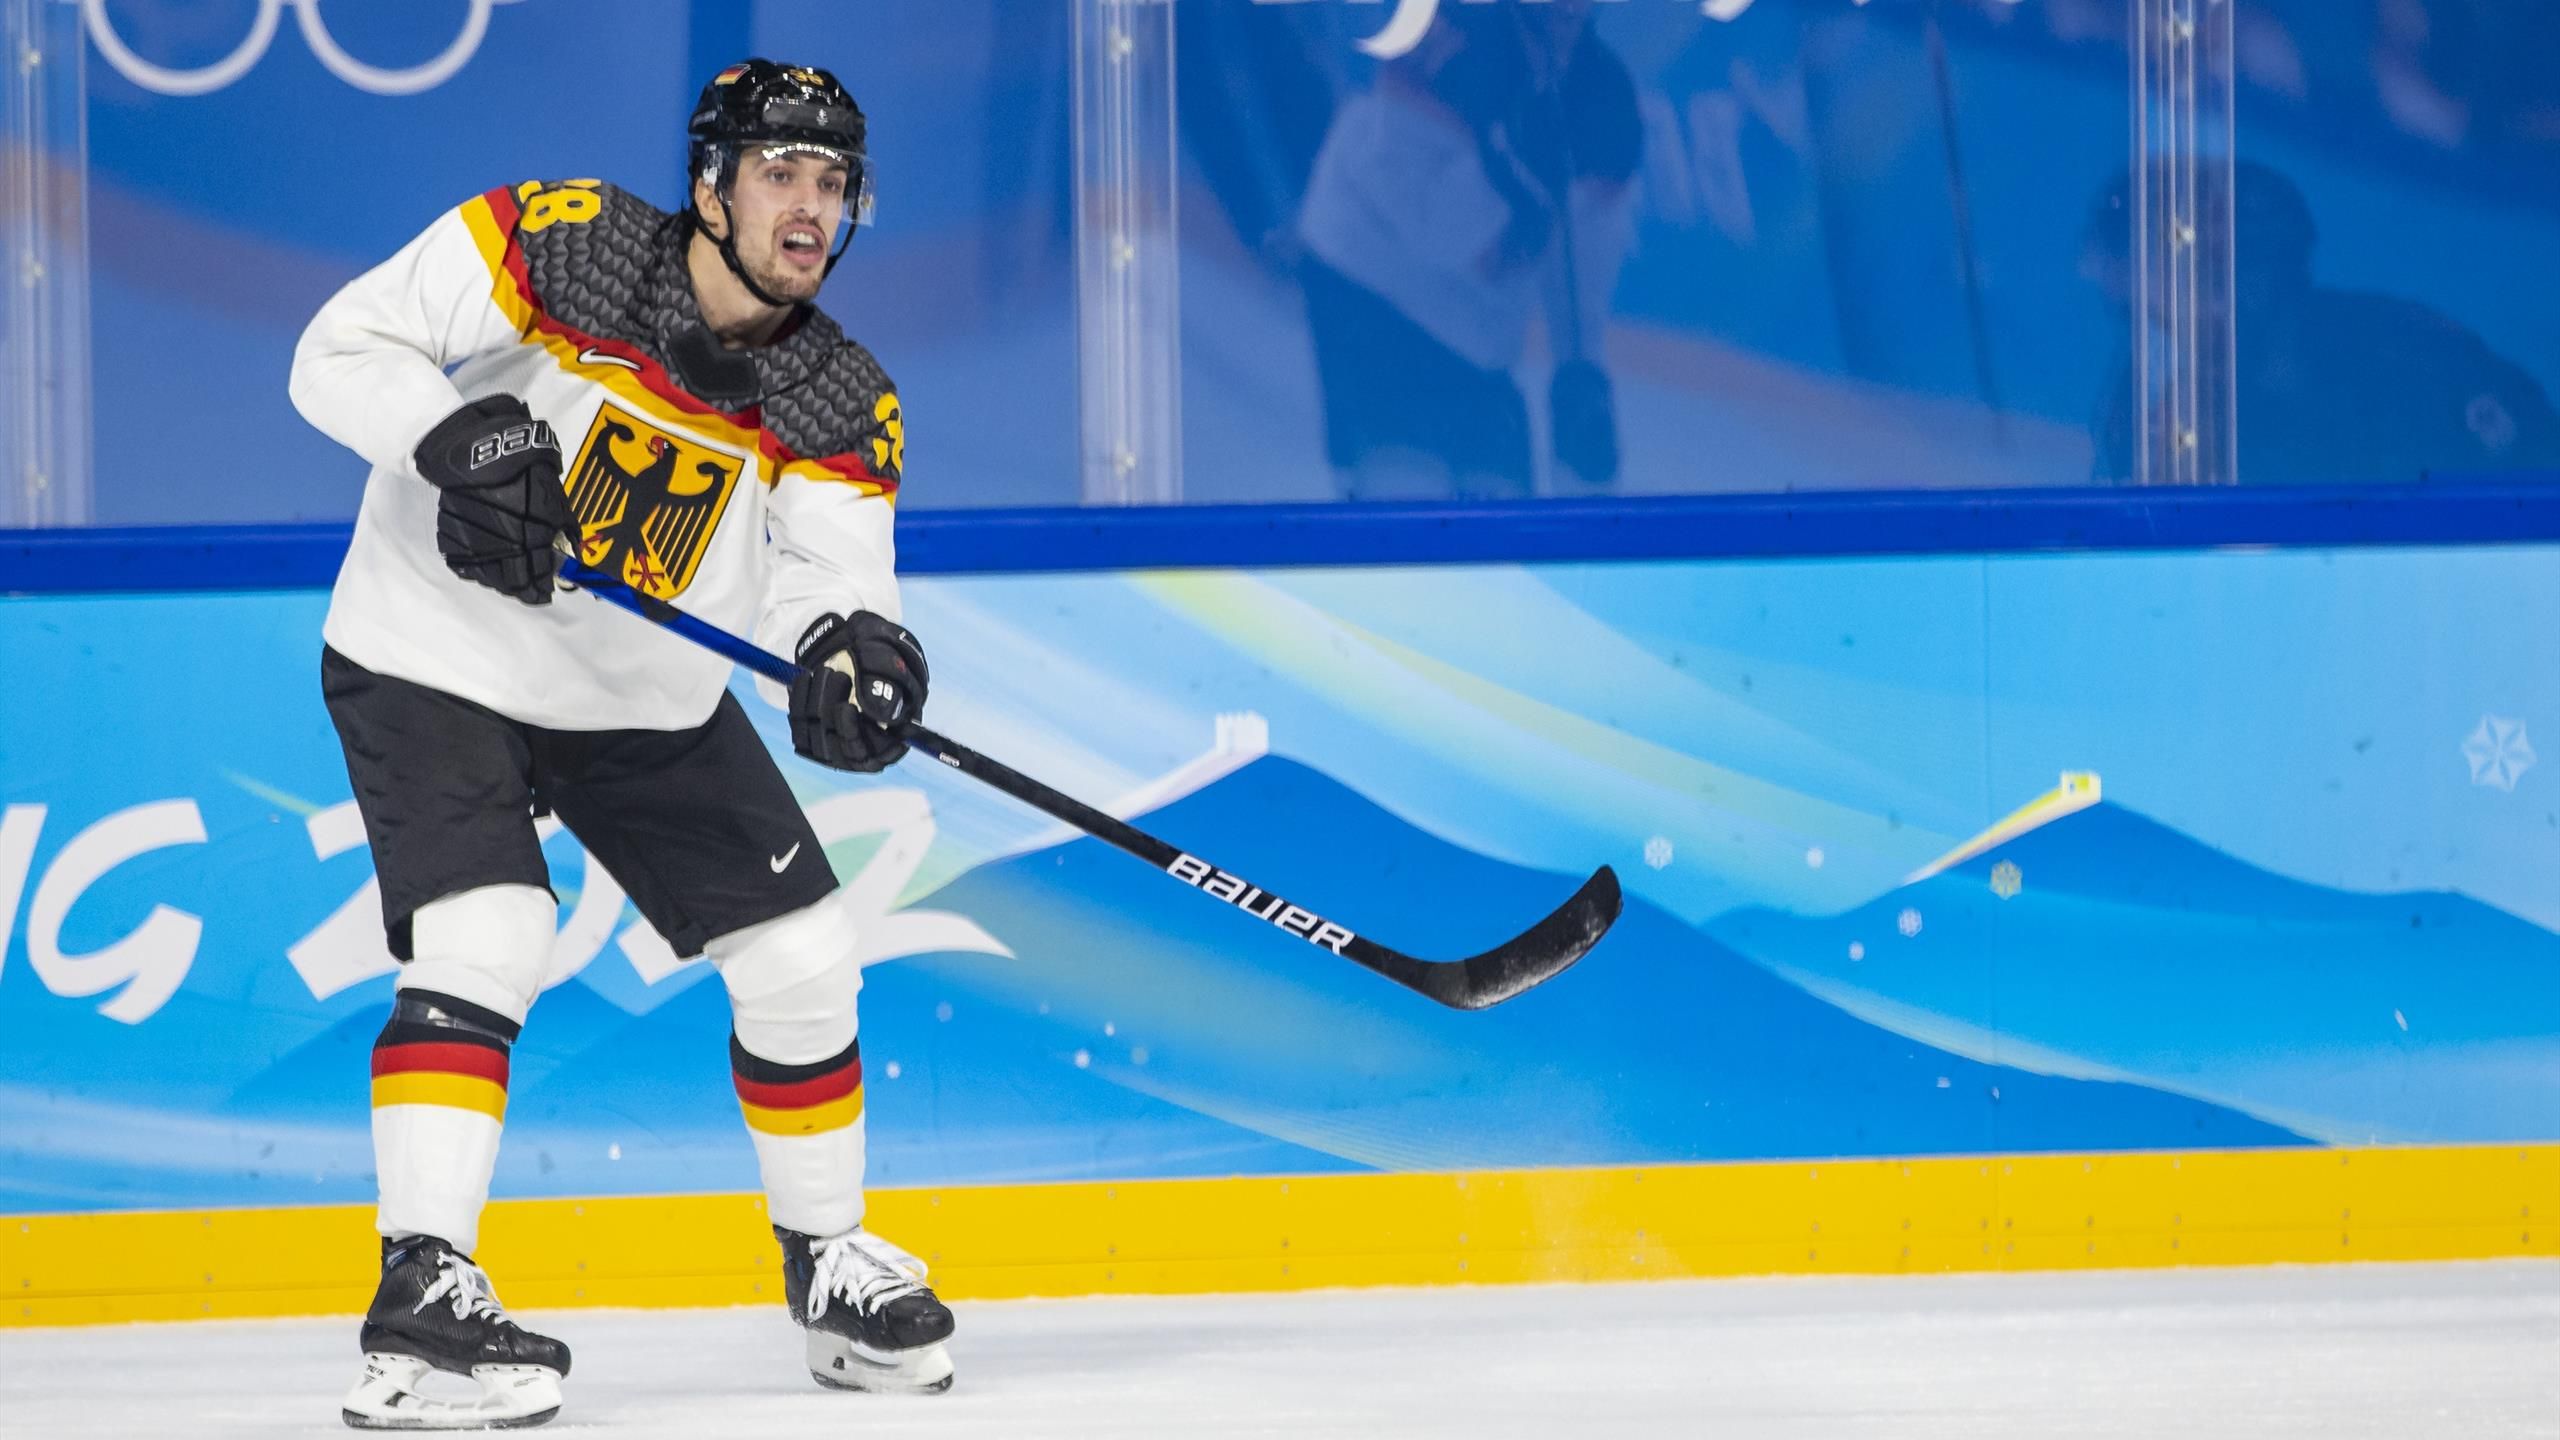 Olympia 2022 - Eishockey Deutschland - China live im TV, Livestream und Liveticker bei Eurosport